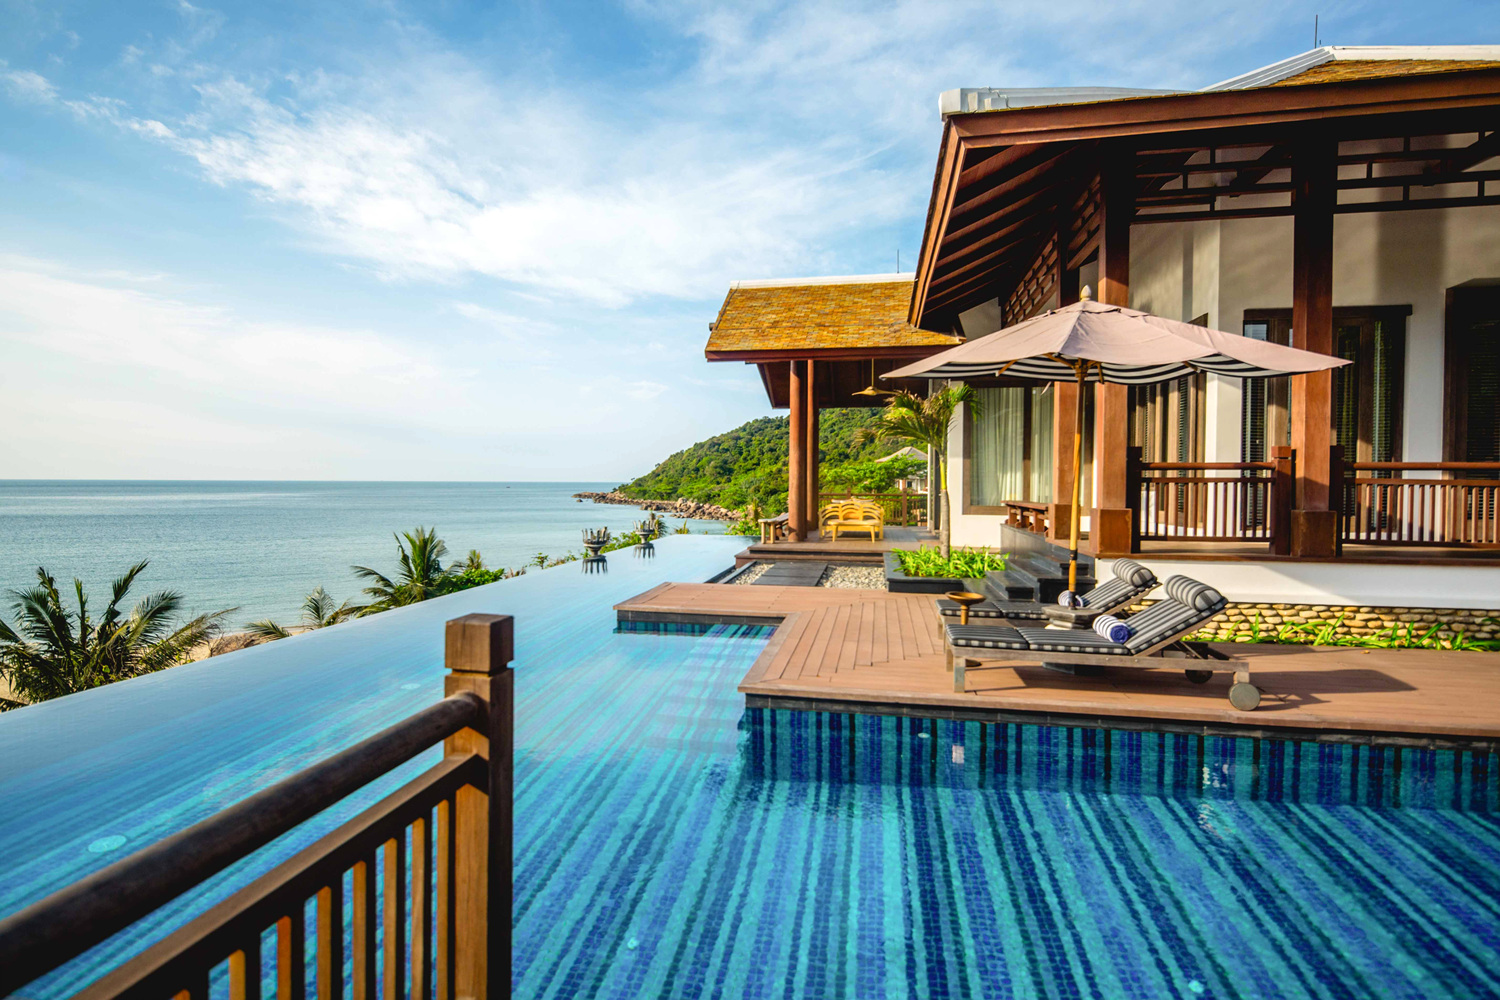 Điểm nhấn trong ngôn ngữ thiết kế của InterContinental Danang Sun Peninsula Resort là hướng đến cái đẹp của sự dung dị, cái đẹp trong hành trình tìm về chính mình là tìm về với thiên nhiên.